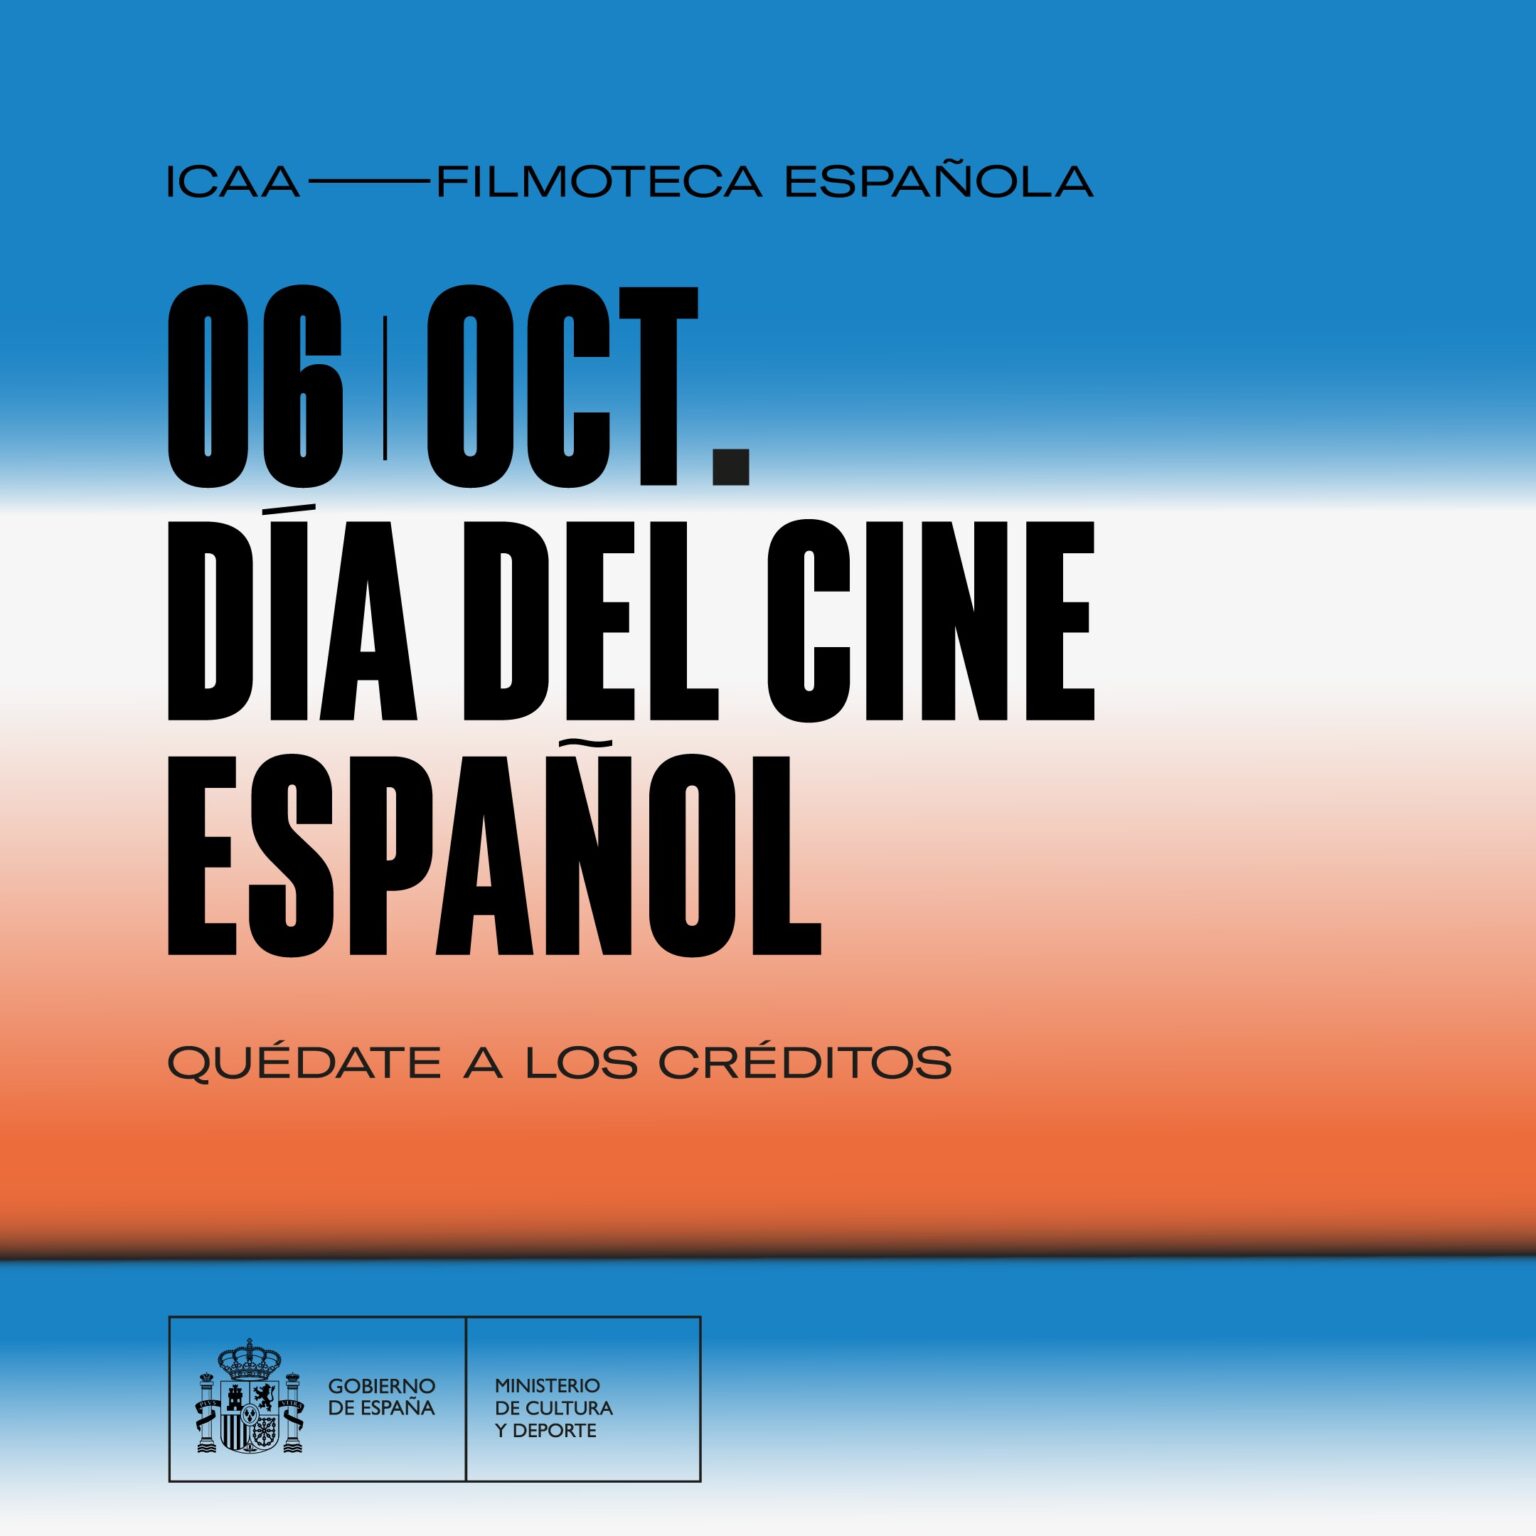 Las bibliotecas también celebran el Día del Cine Español